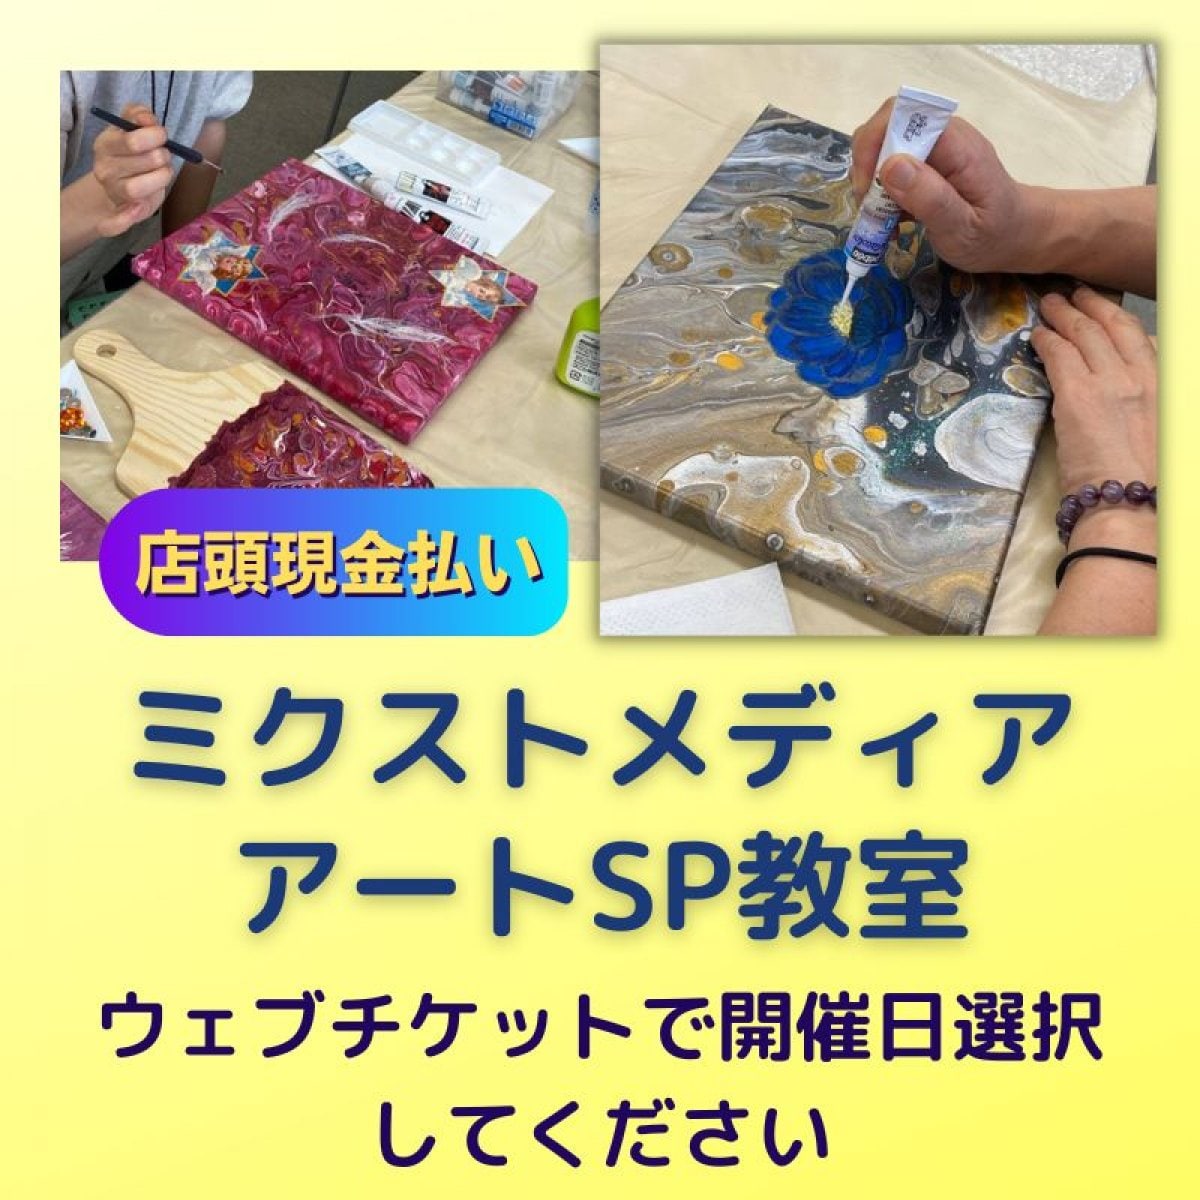 【店頭現金払い】ミクストメディアSP体験WS | MakiRyu-Art | 神奈川横浜 | アート教室